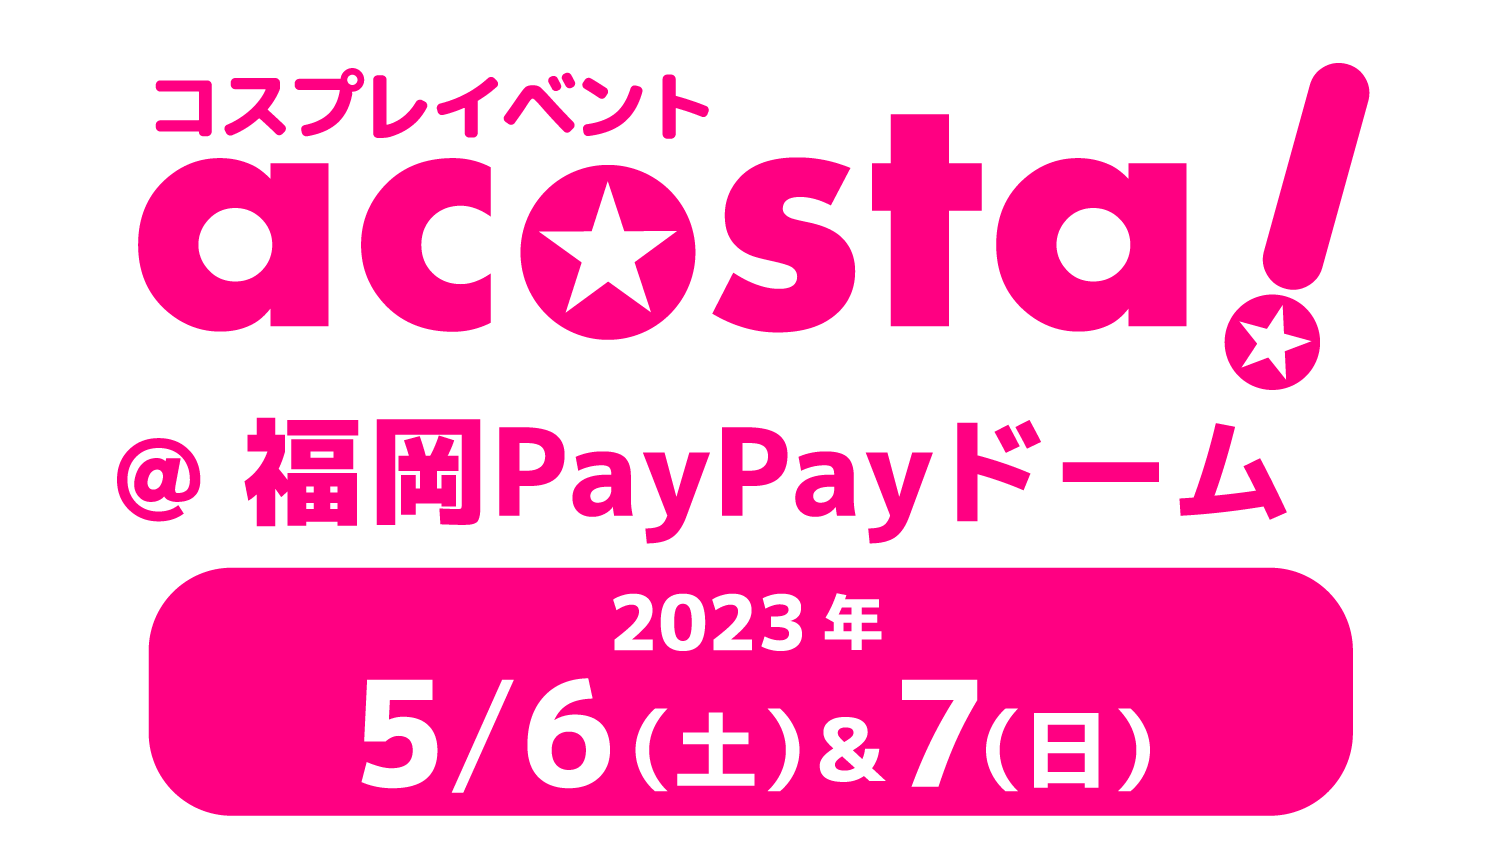 acosta!(アコスタ)@福岡PayPayドーム 2023年5月6日(土)&7日(日)